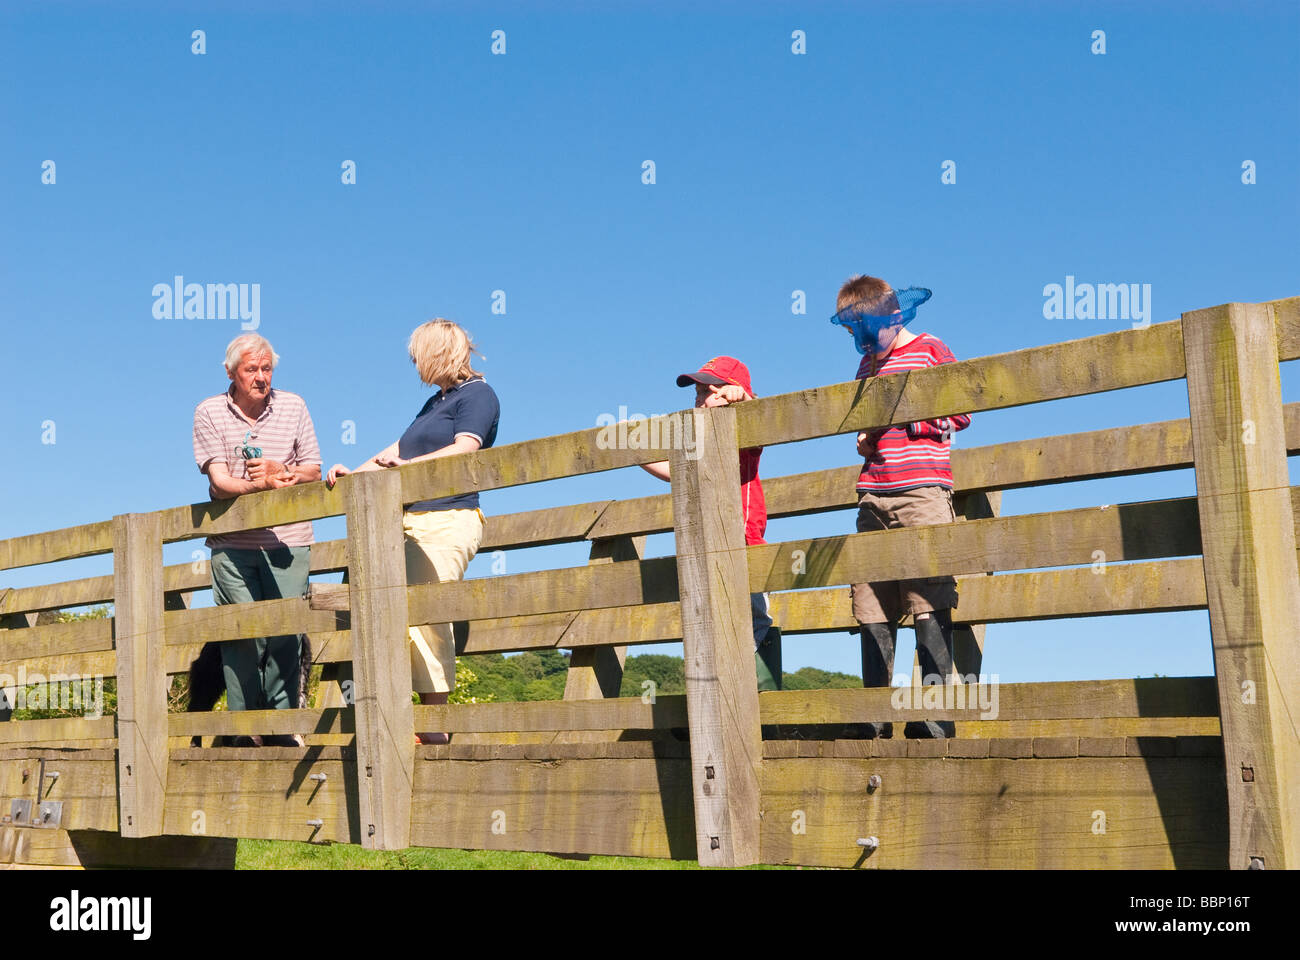 Un groupe de quatre membres de la famille de deux adultes et deux enfants debout sur un pont dans un cadre rural à la campagne britannique Banque D'Images